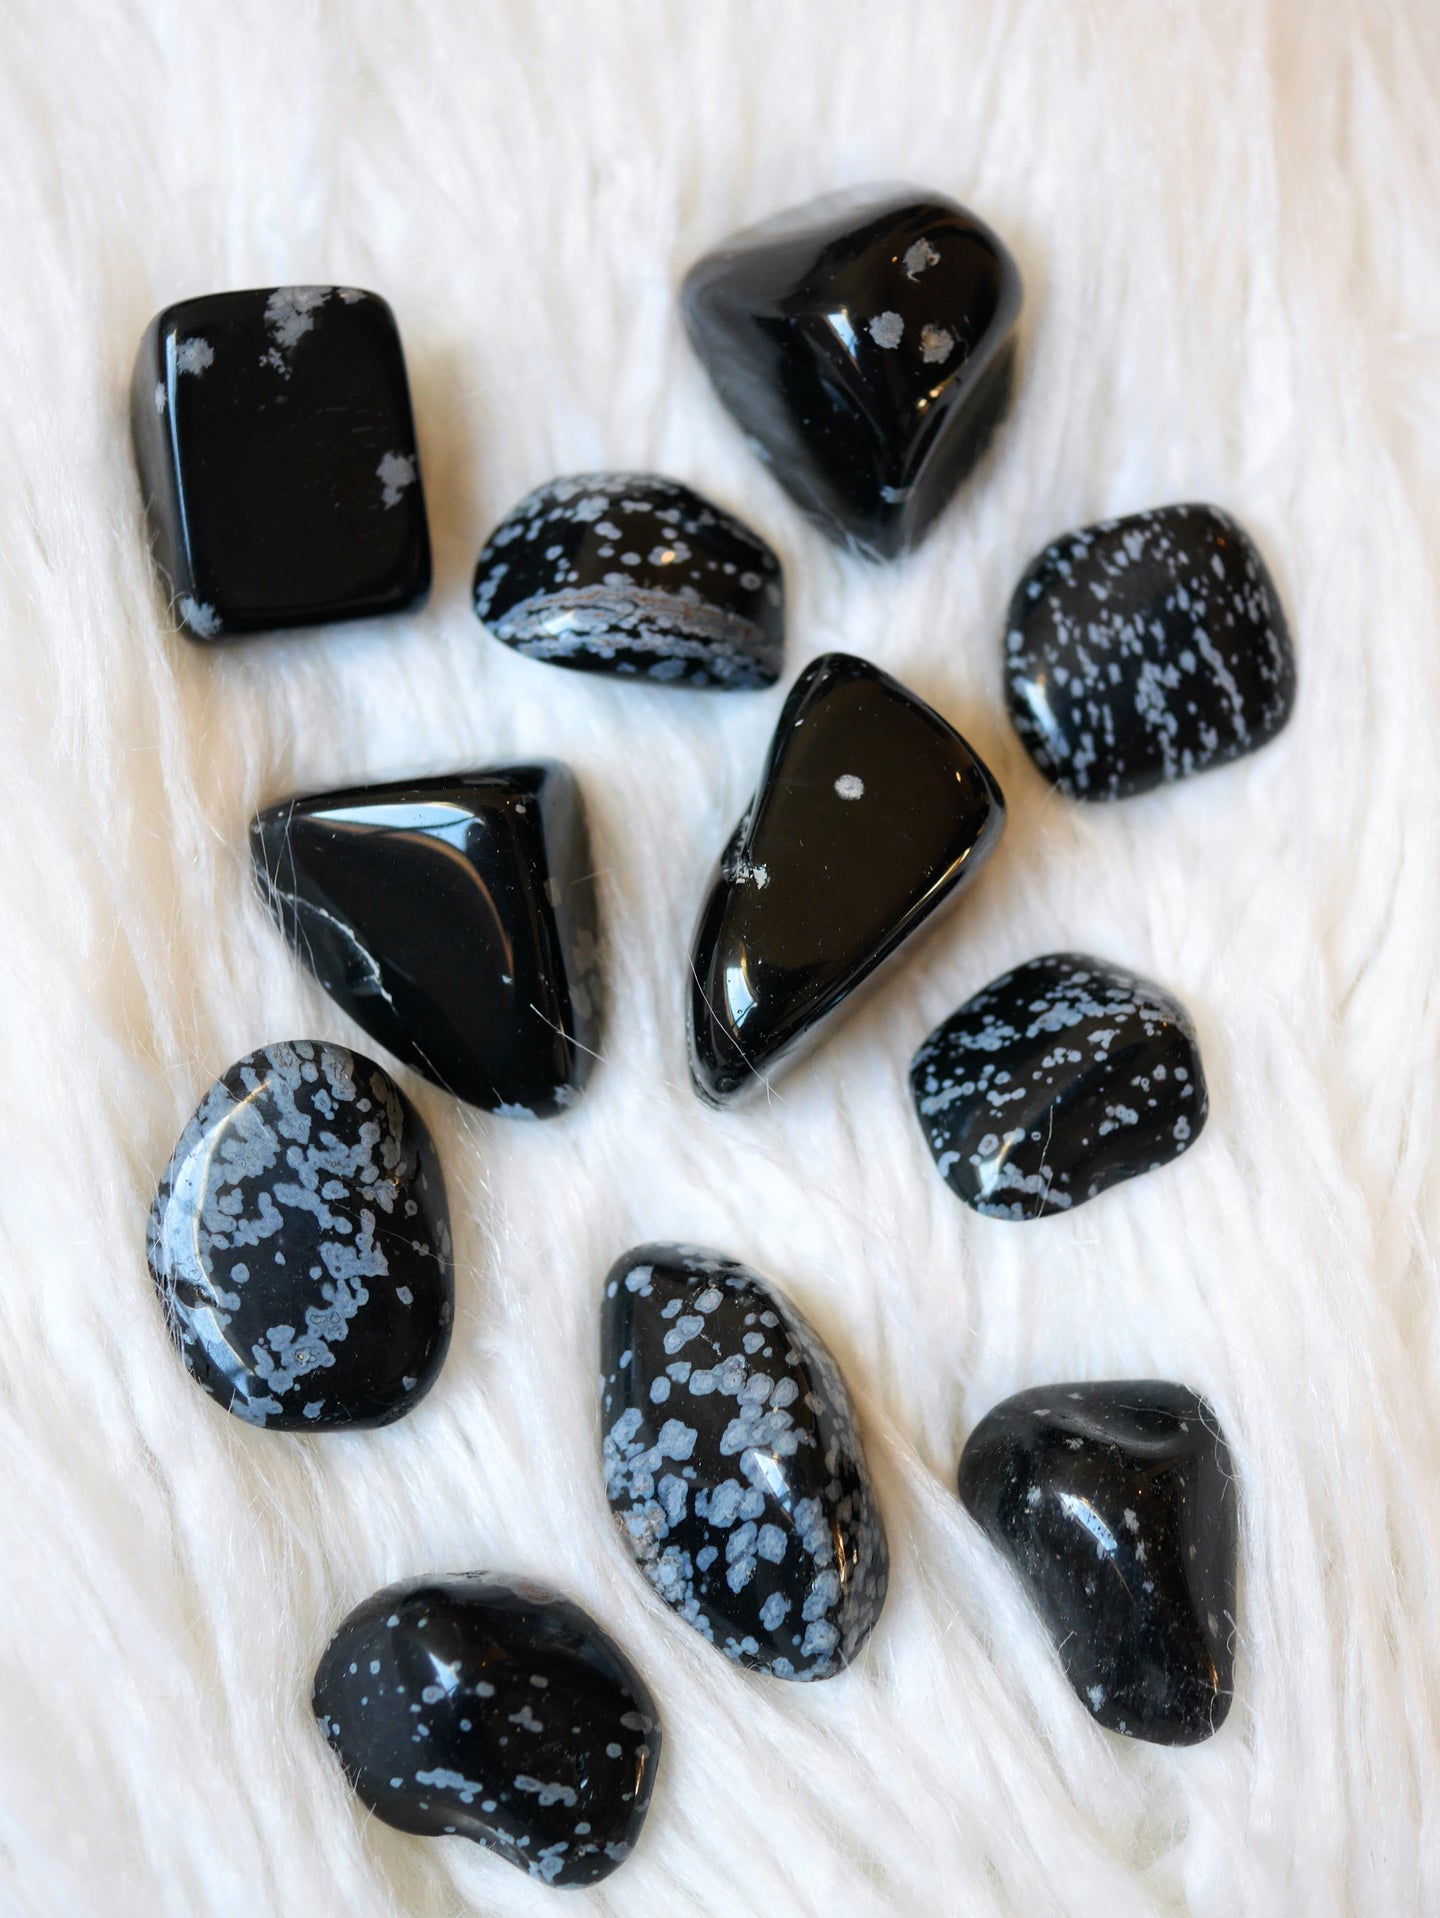 Snowflake Obsidian tumbled stones